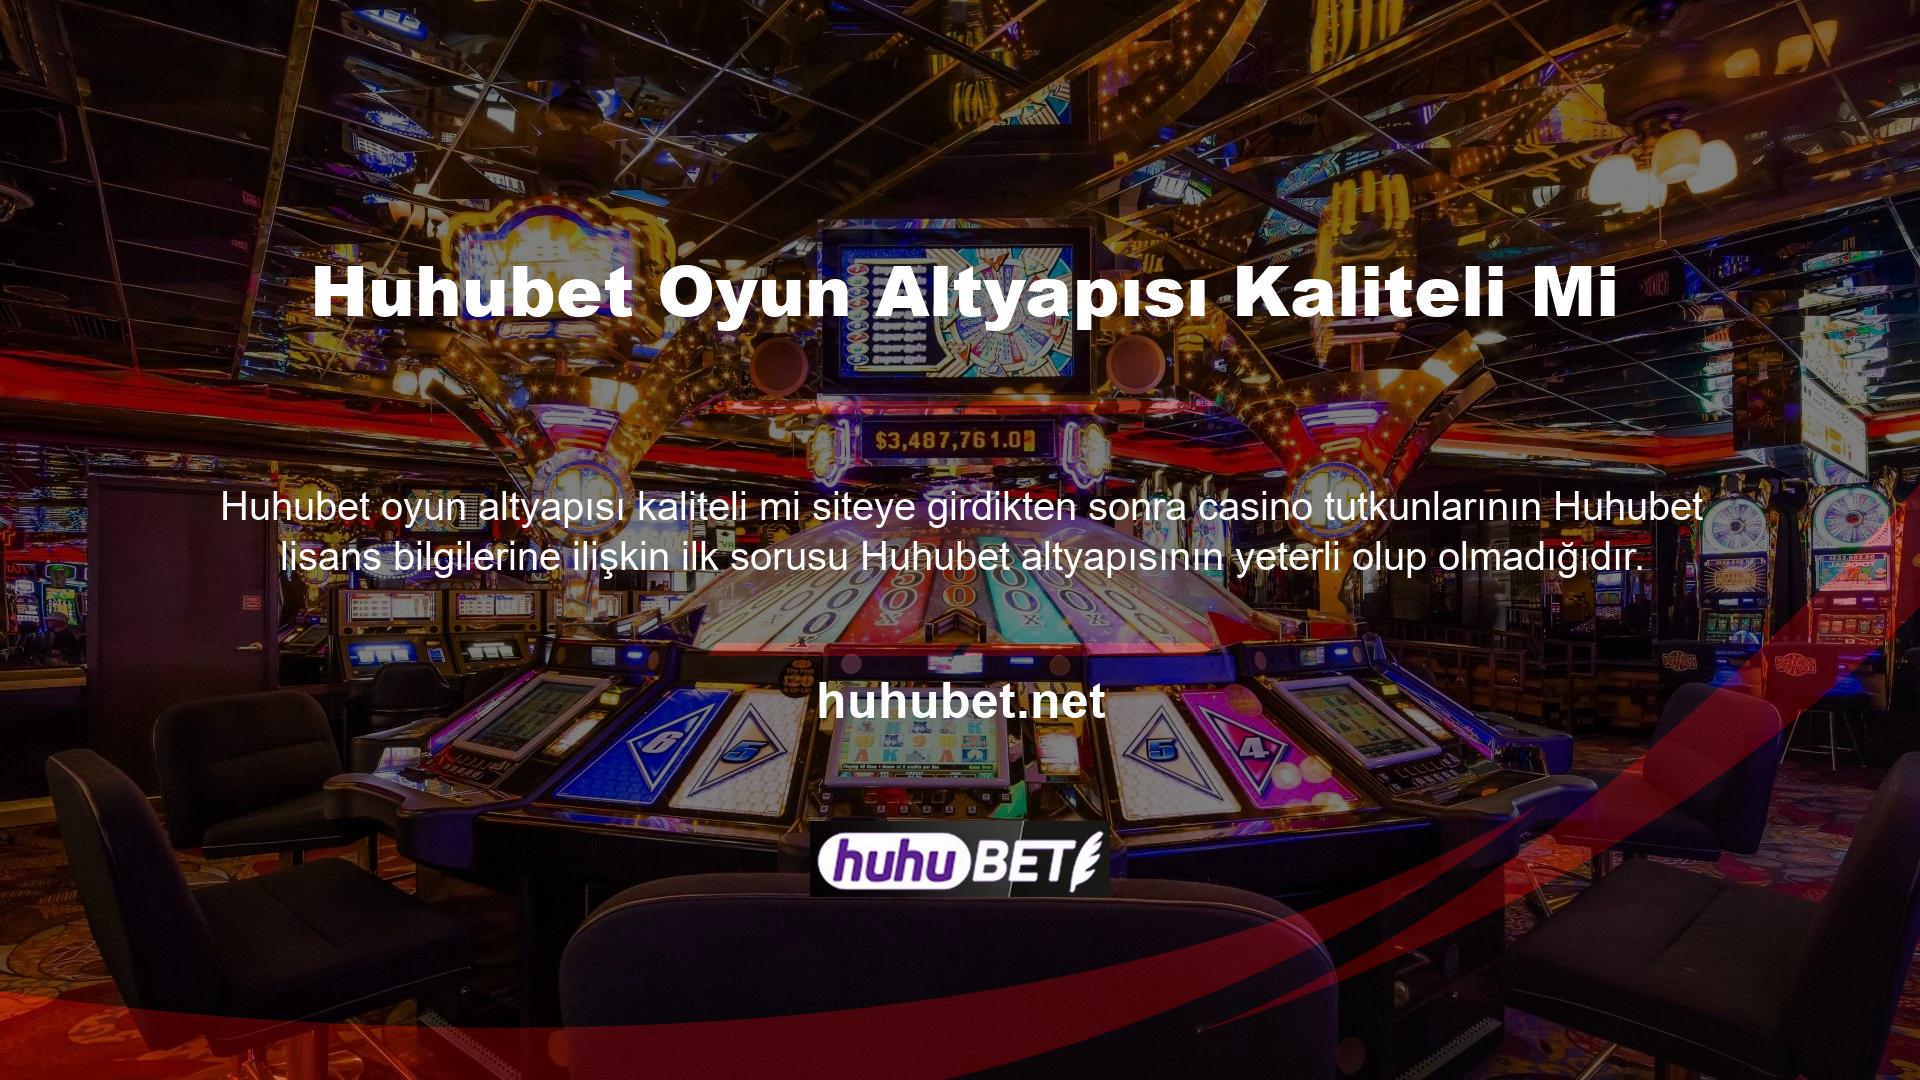 Huhubet Casino/Canlı Casino, Huhubet Casino/Canlı Casino bölümünde çeşitli seçenekler sunulmaktadır